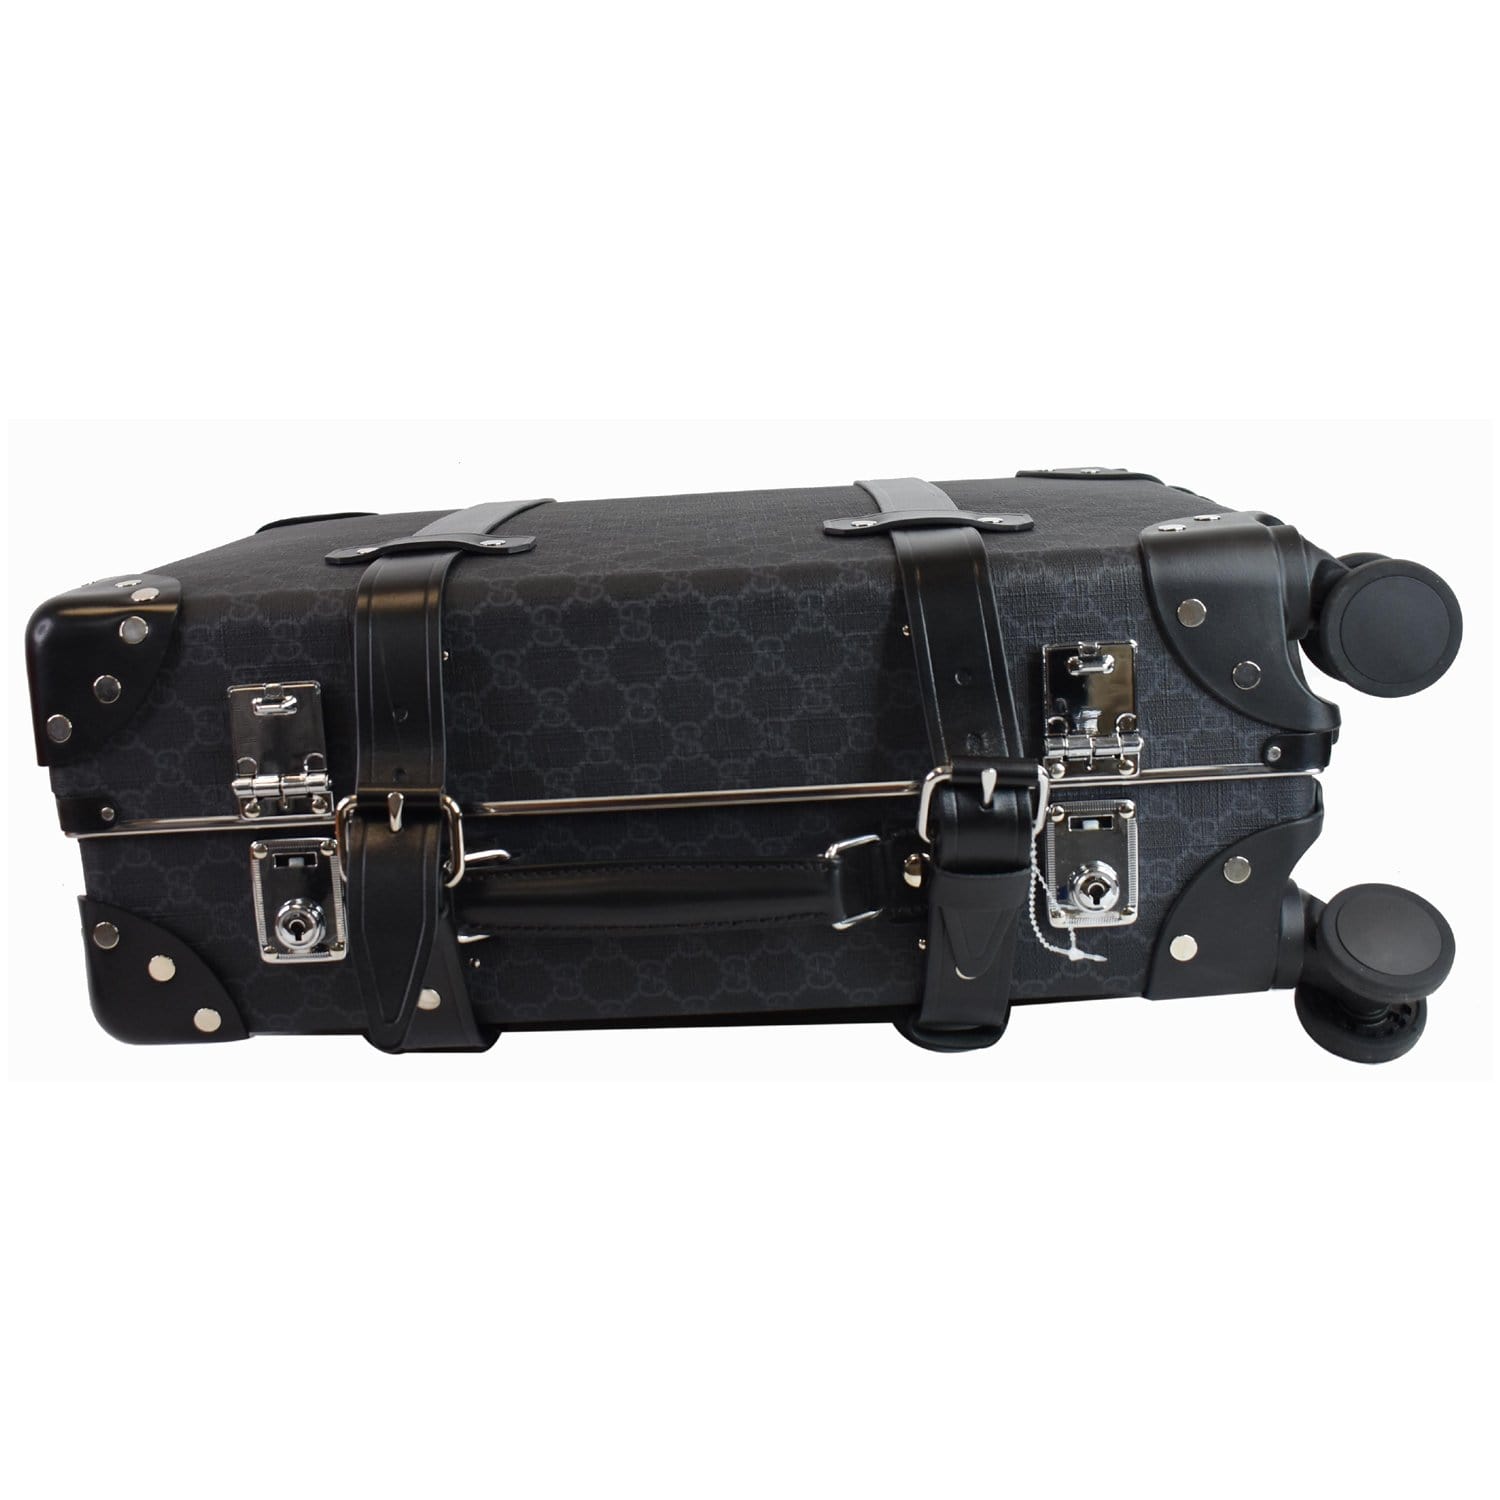 Chanel Black Leather Globetrotter Bag